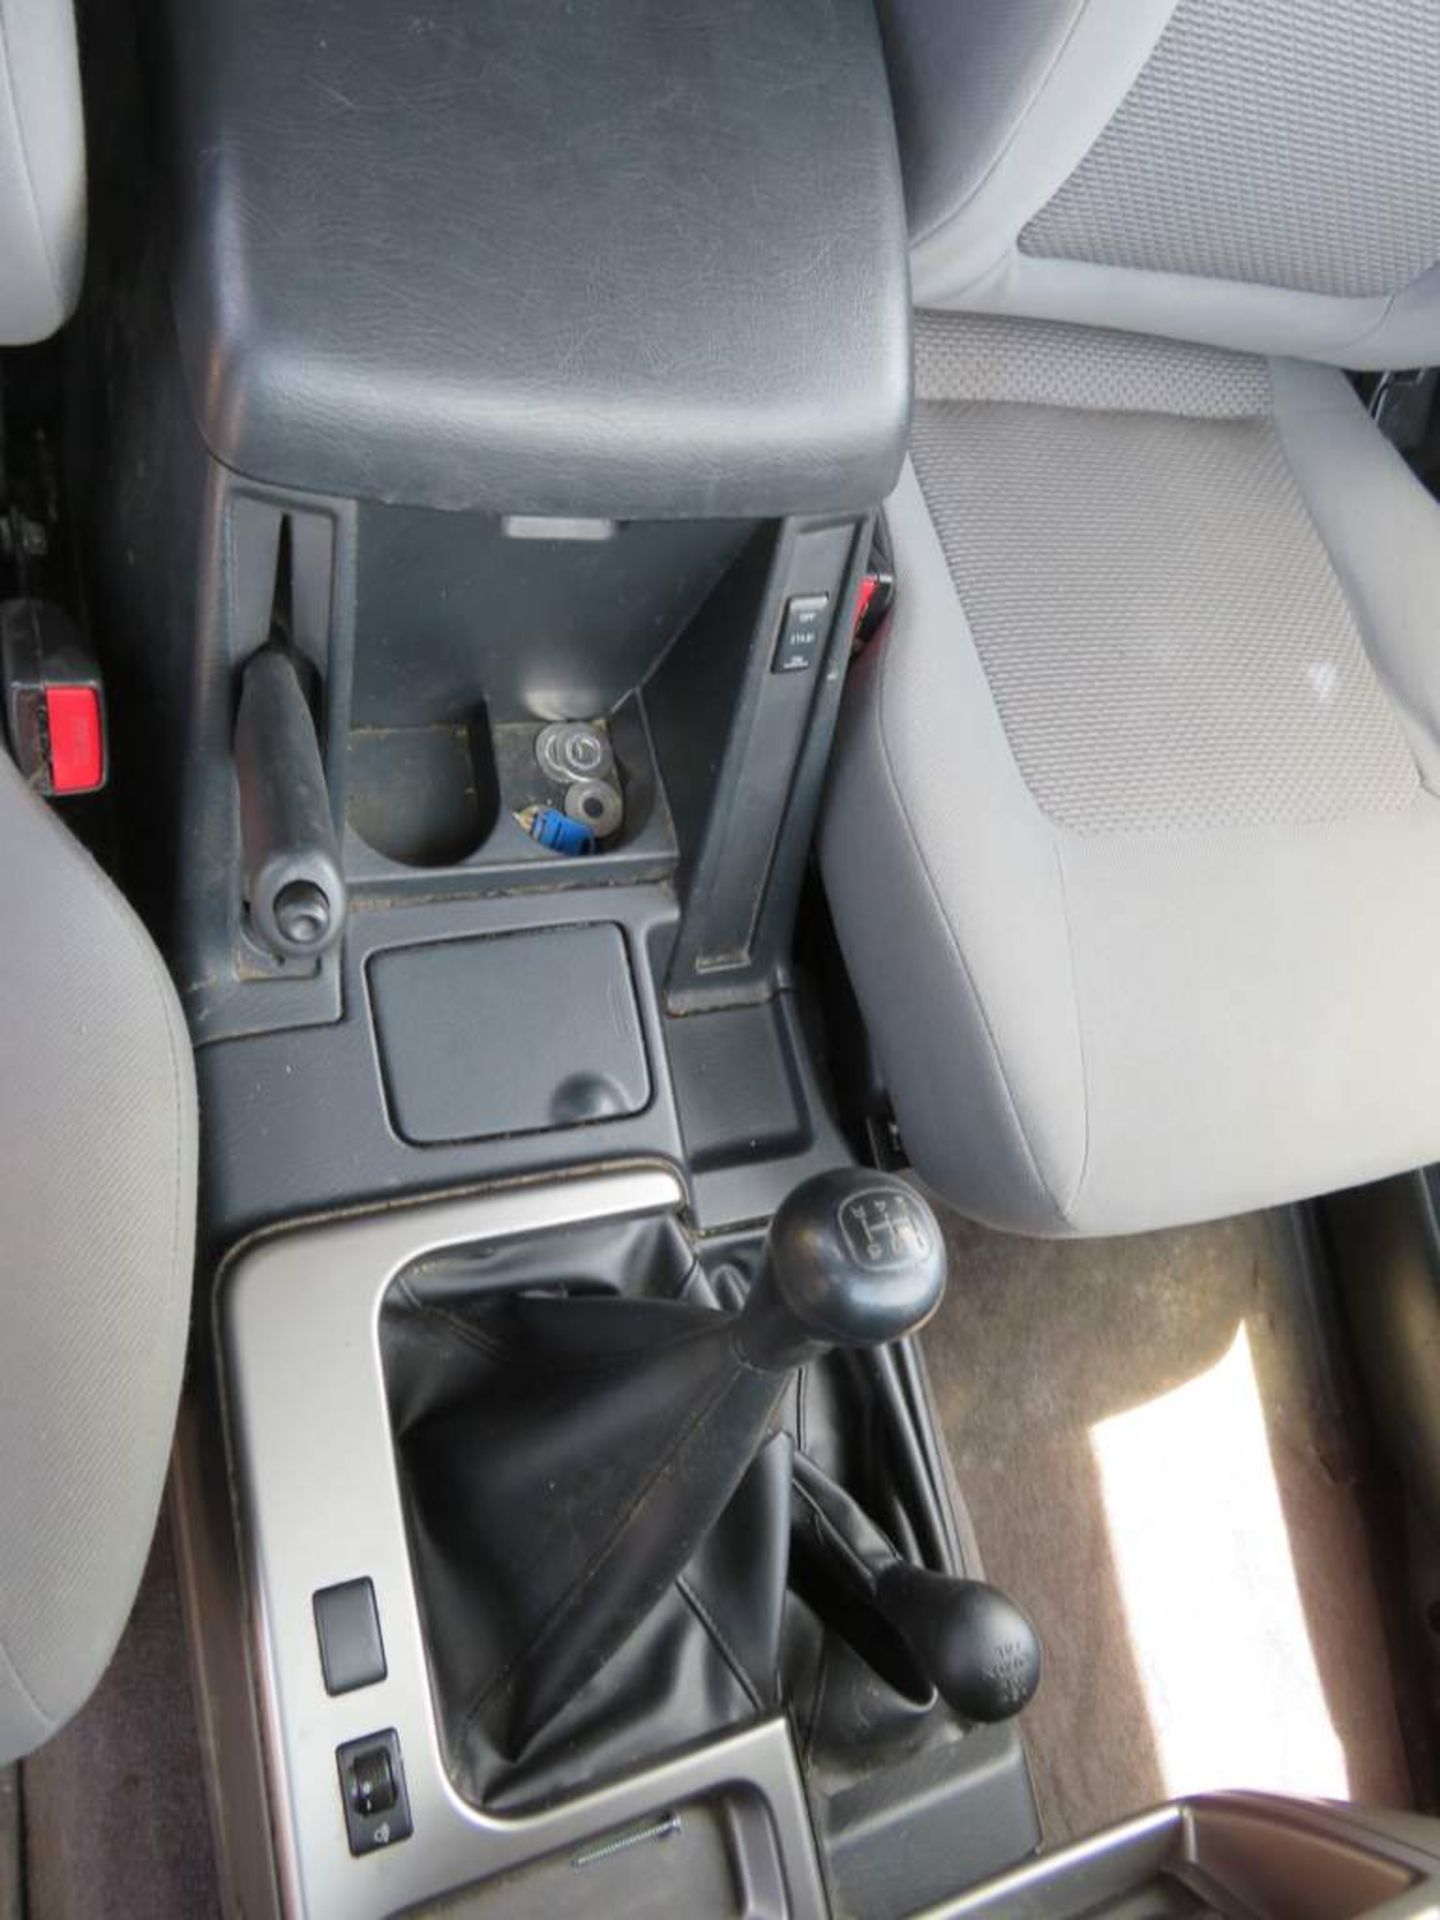 2009 Nissan Patrol Trek DI 4x4 - Image 13 of 30